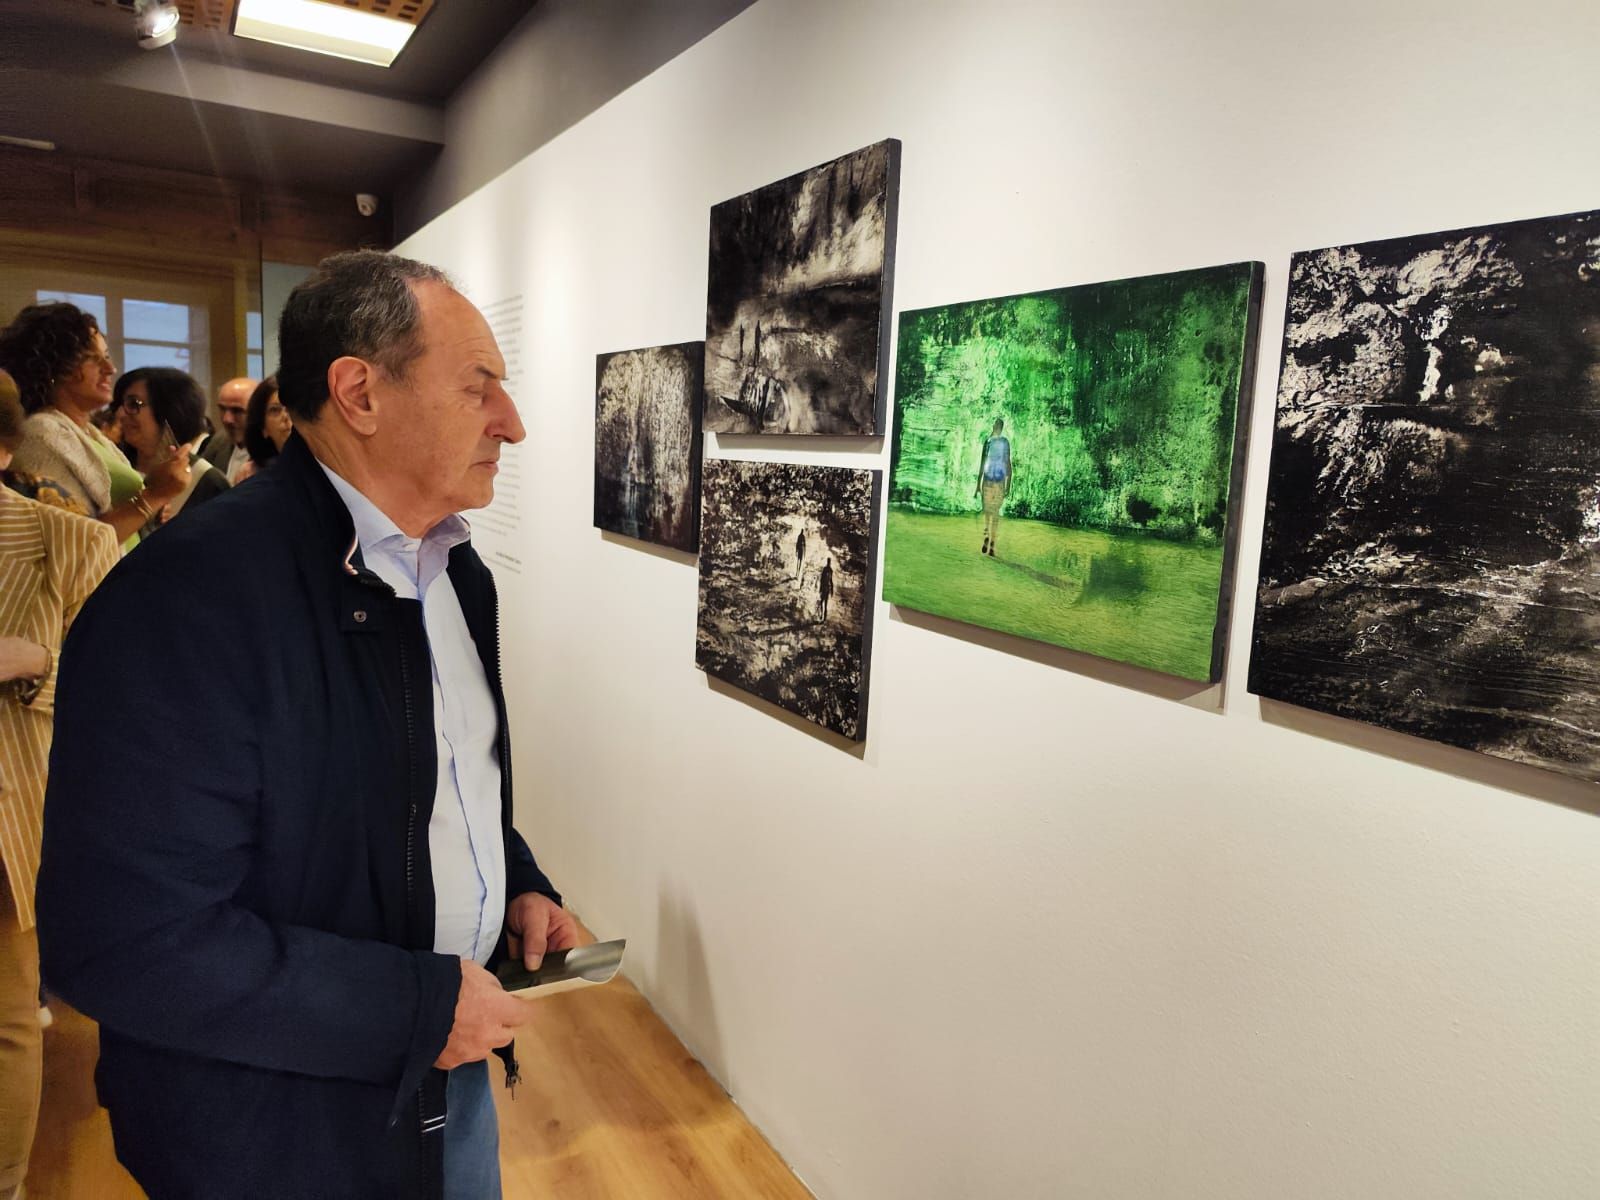 Inauguración de la exposición de Guillermo Simón, "Huellas errantes", en la Fundación Cardín de Villaviciosa